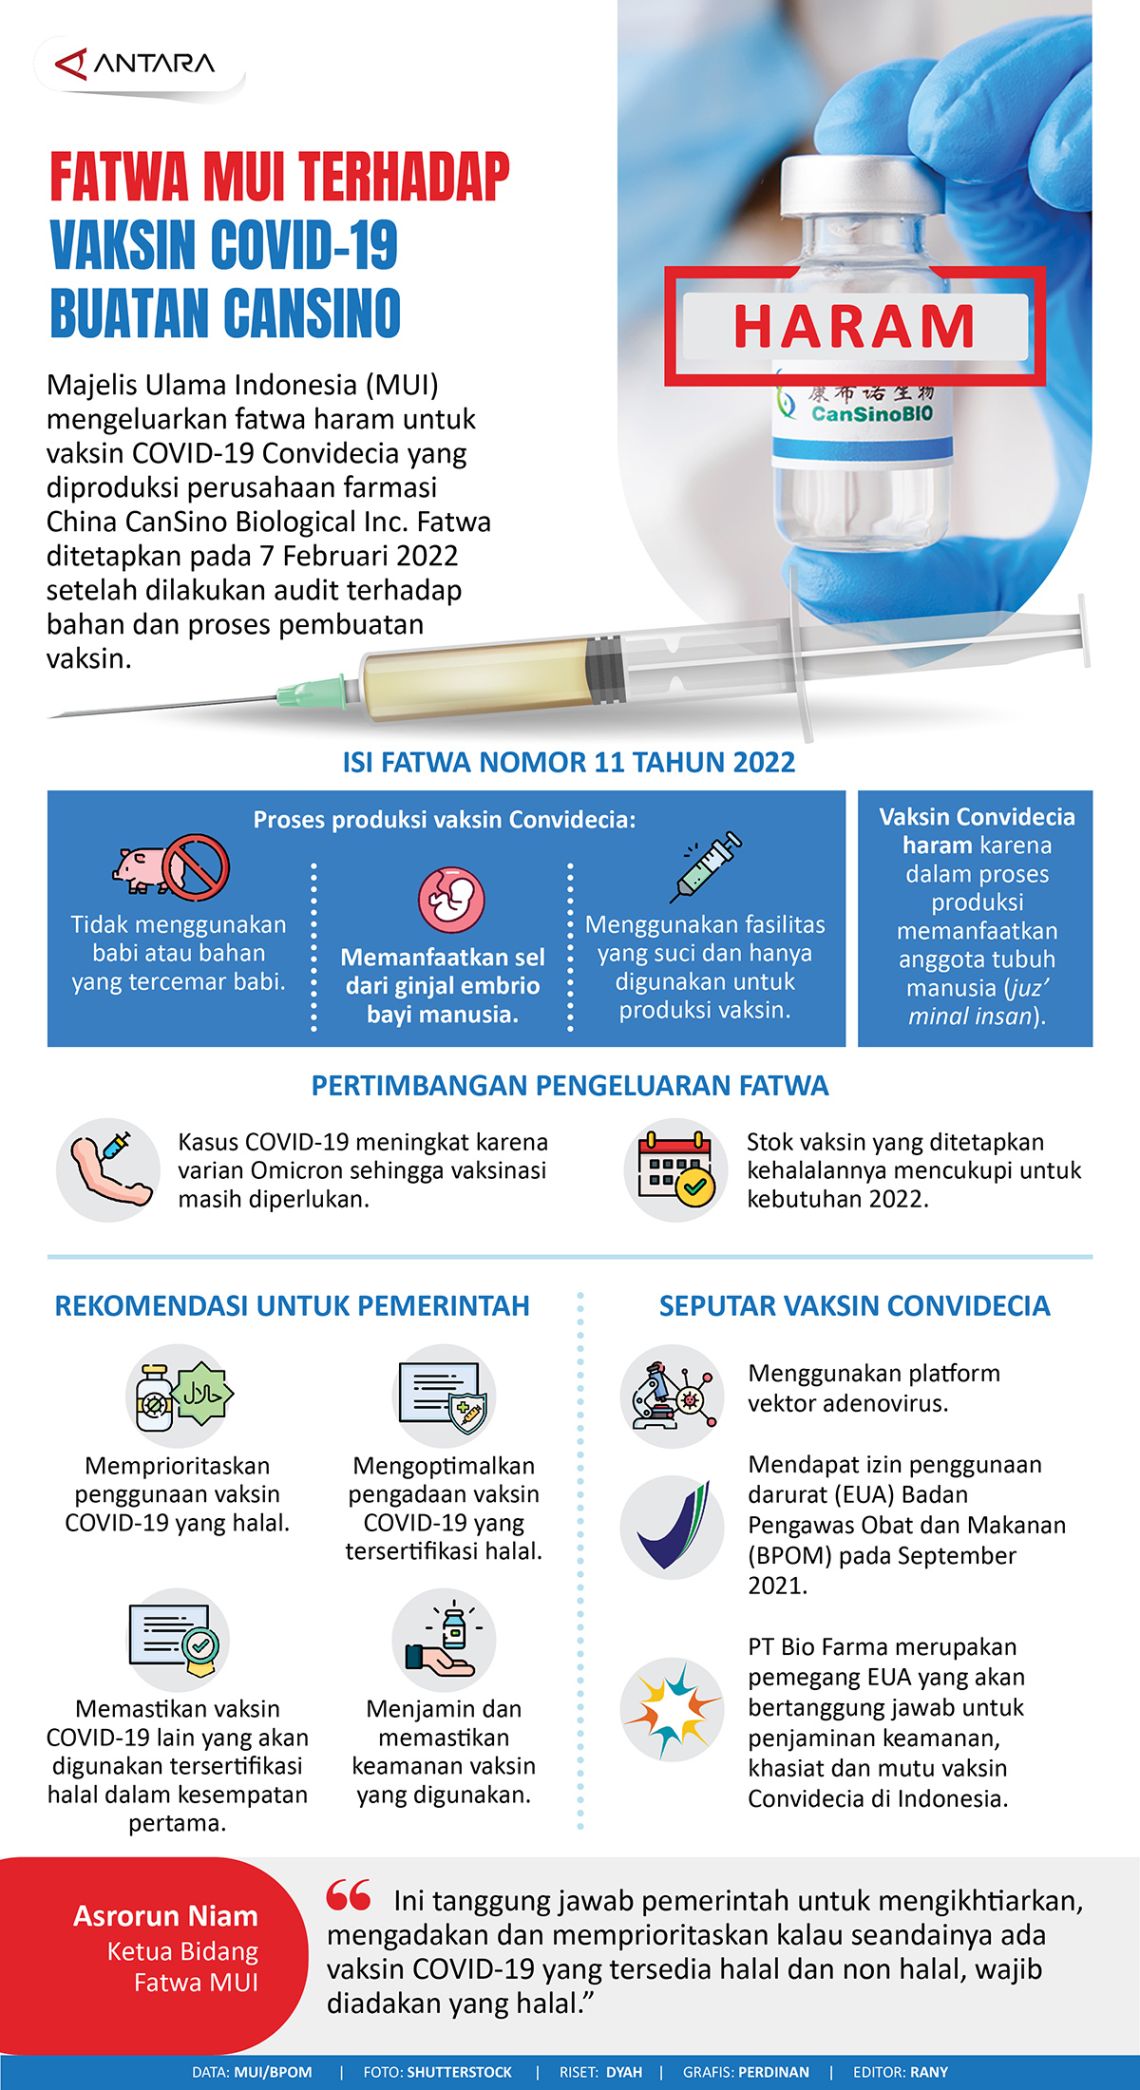 Infografis Fatwa MUI terhadap Vaksin Covid-19 Buatan CanSino (Foto: ANTARA)